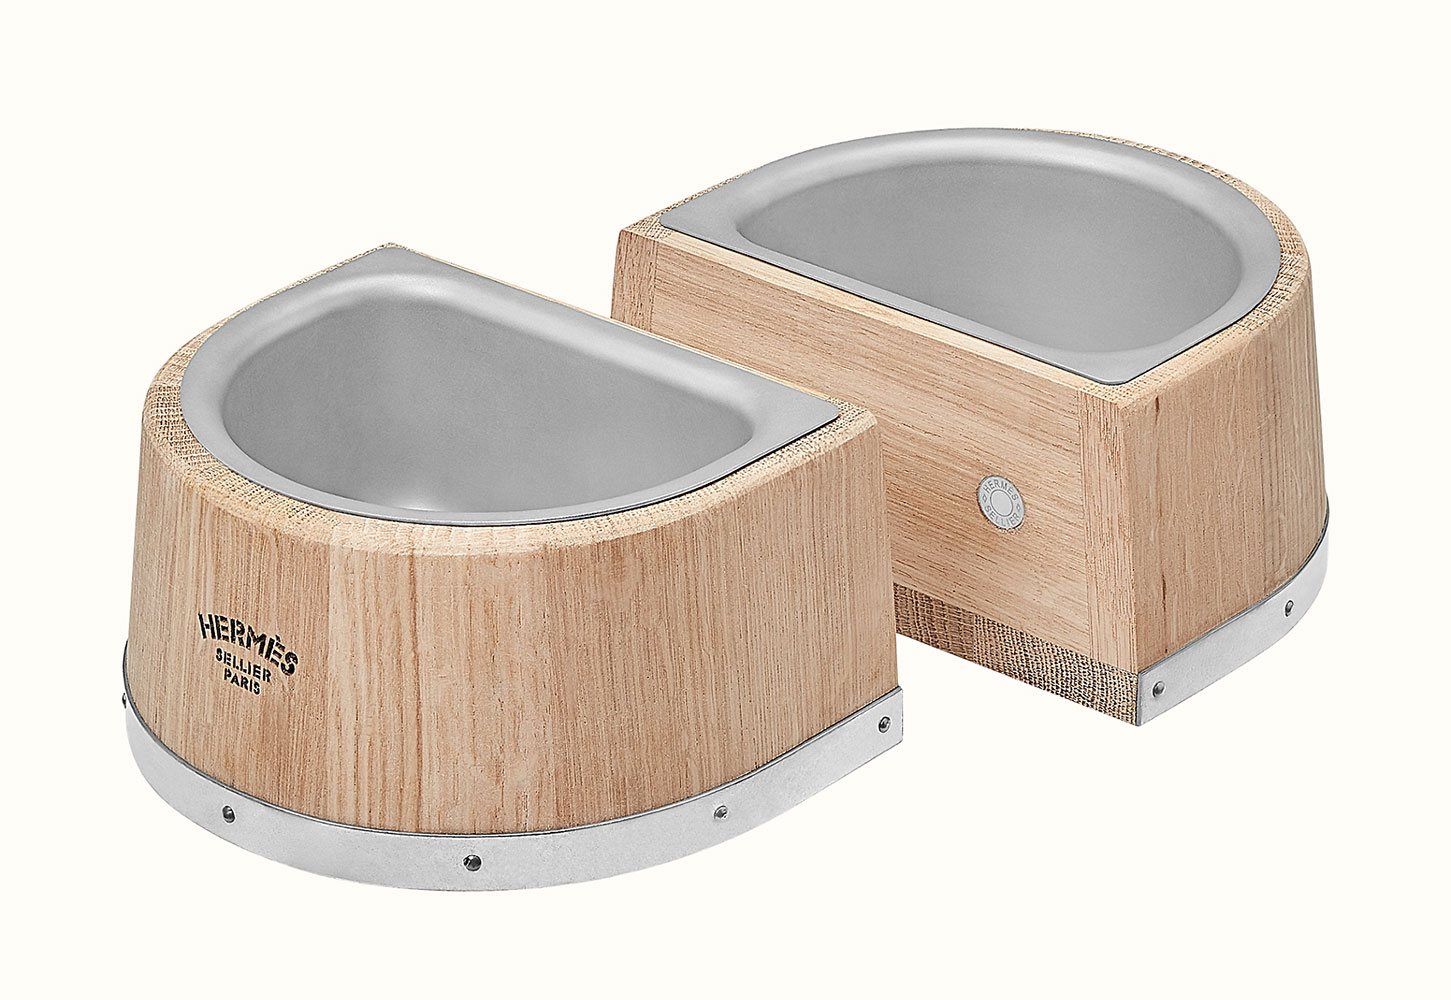 Hermès thiết kế bát ăn cho chó bằng gỗ làm thùng ủ rượu vang 1